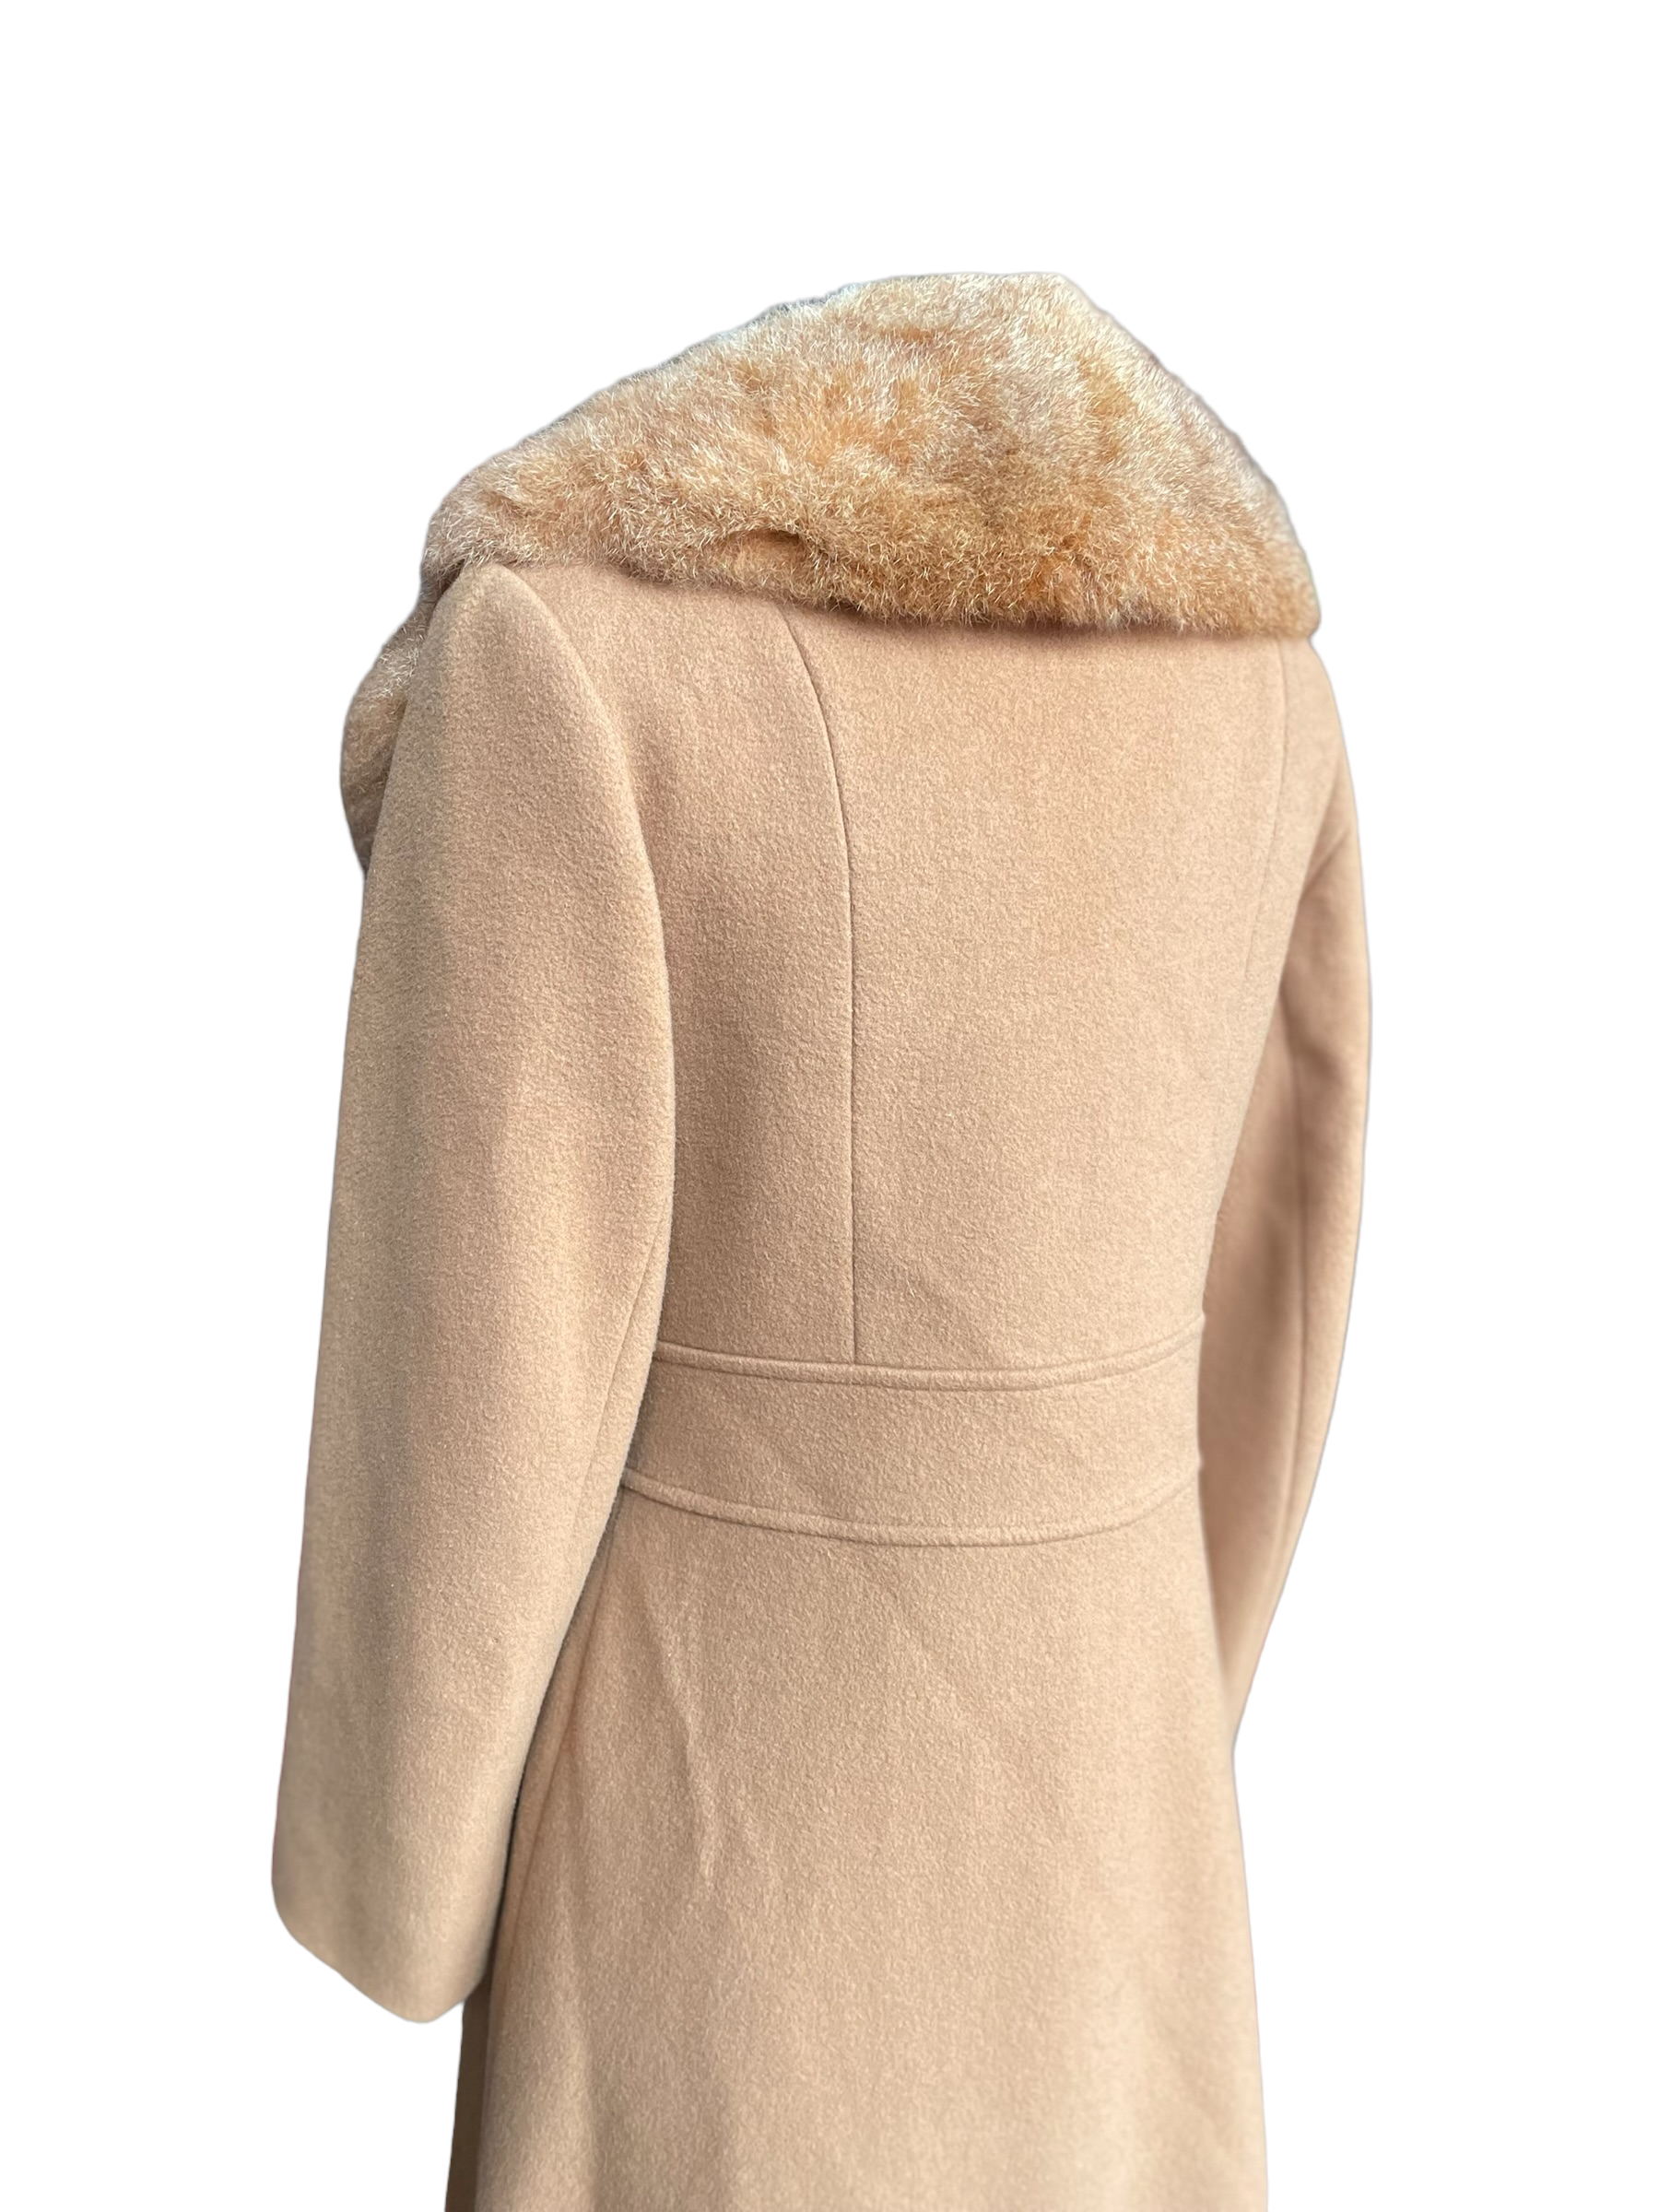 Rear left shoulder angle of Vintage 1960s Fashionbilt Wool Coat with Fur Collar | Barn Owl Vintage | Seattle True Vintage